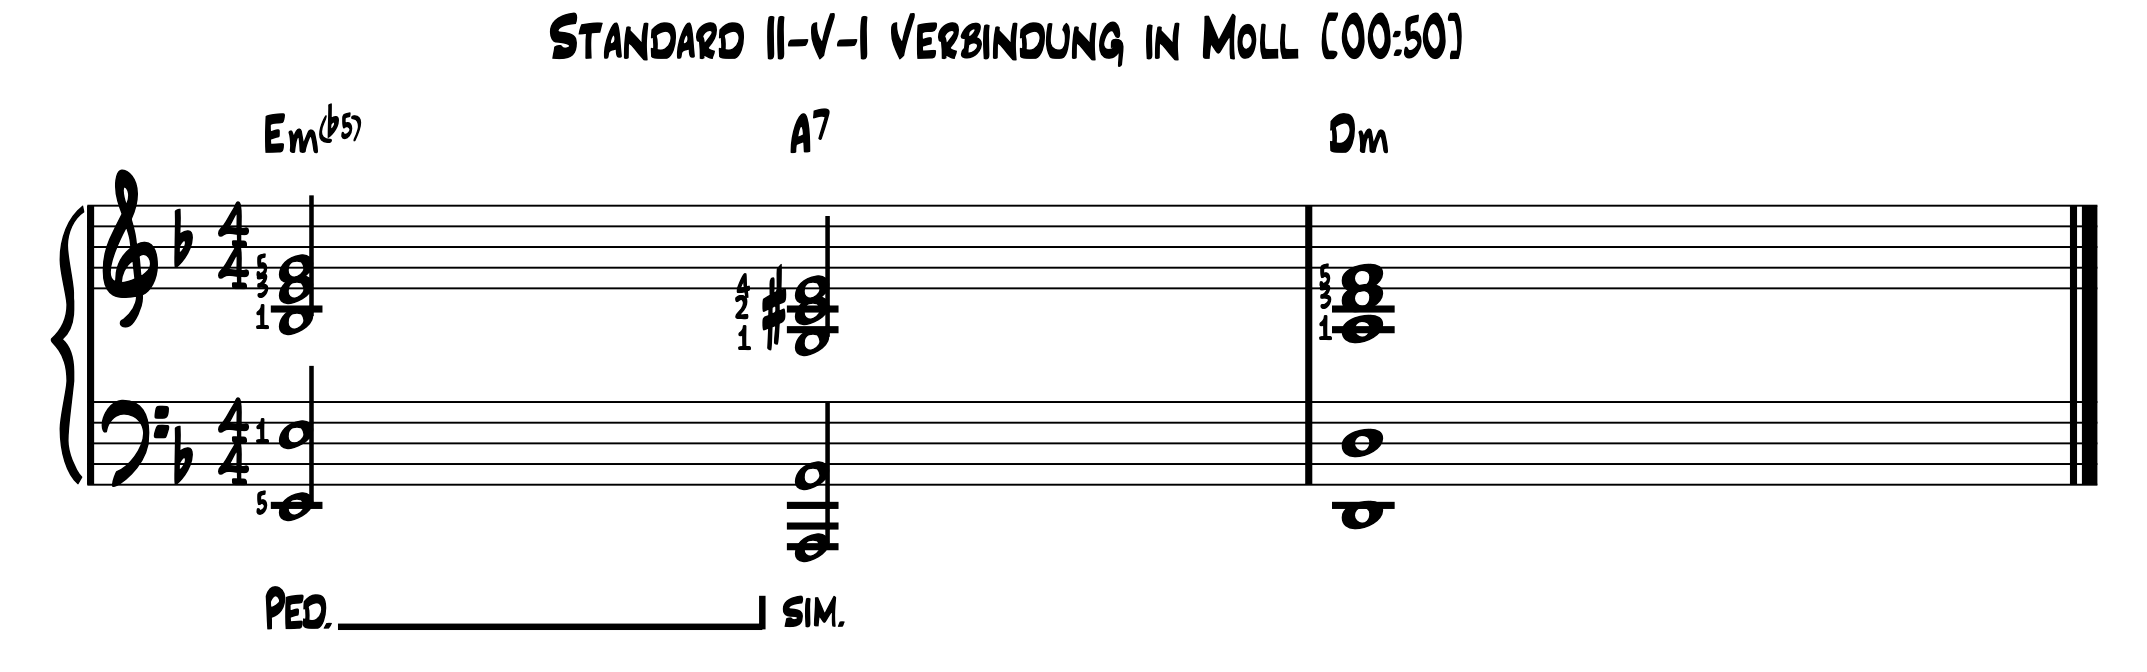 Standard ii-V-i Verbindung in Moll